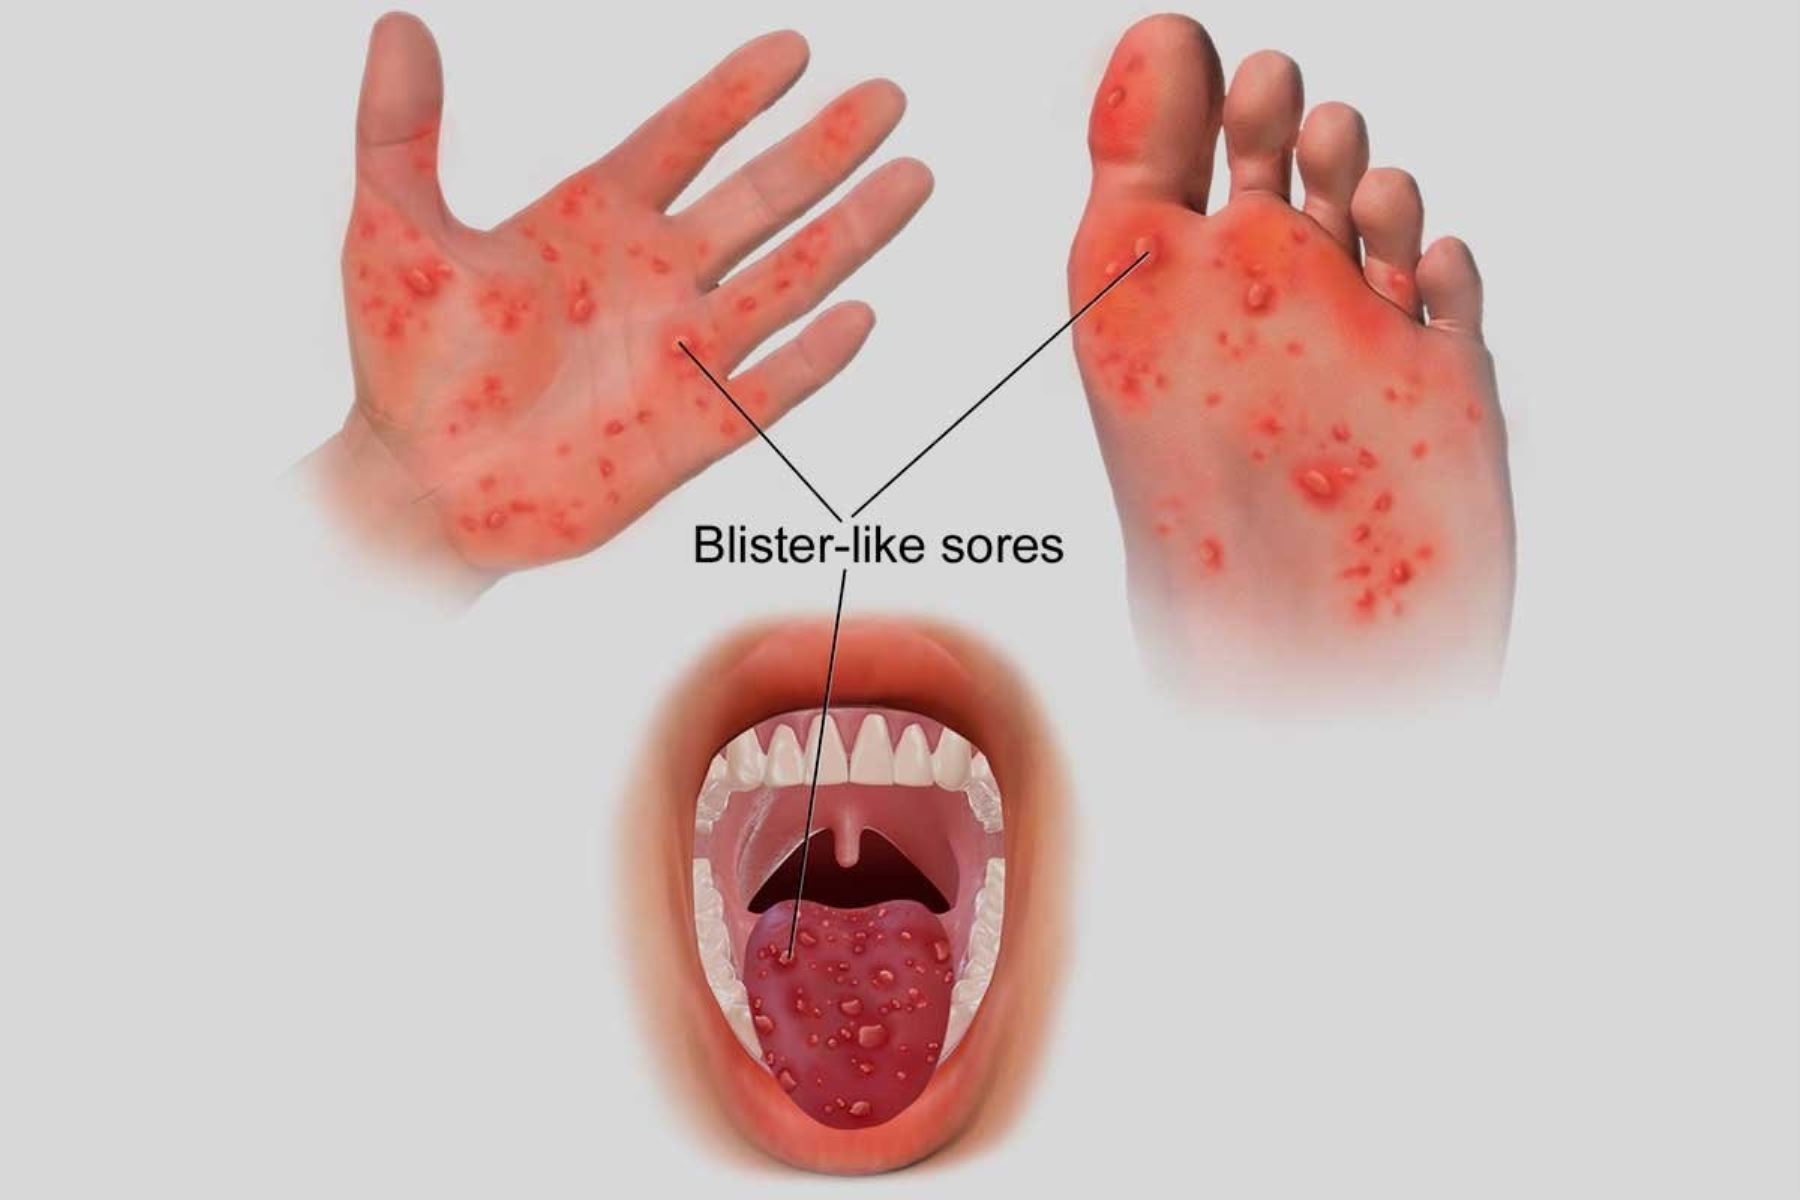 Los síntomas de la enfermedad de manos, pies y boca son dolor abdominal, malestar general, fiebre, dolor de garganta y llagas, primero en la boca, luego en manos y después en la planta de los pies.